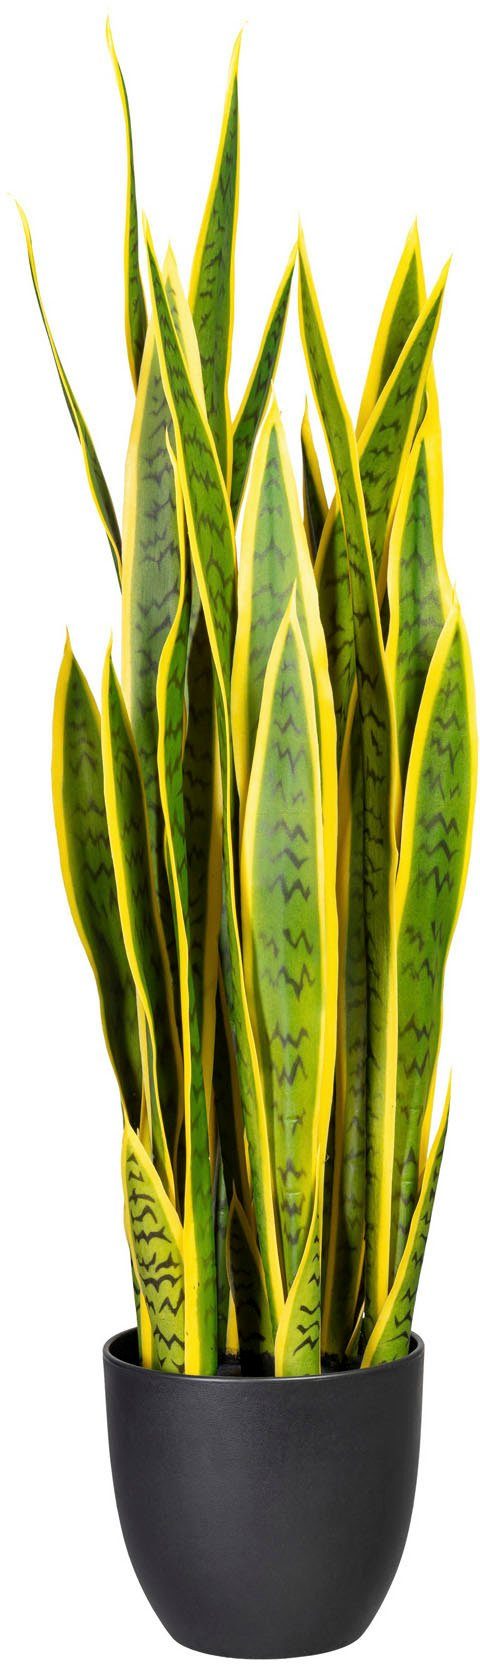 Künstliche Zimmerpflanze Sanseveria Sanseveria, Creativ cm green, 90 Höhe